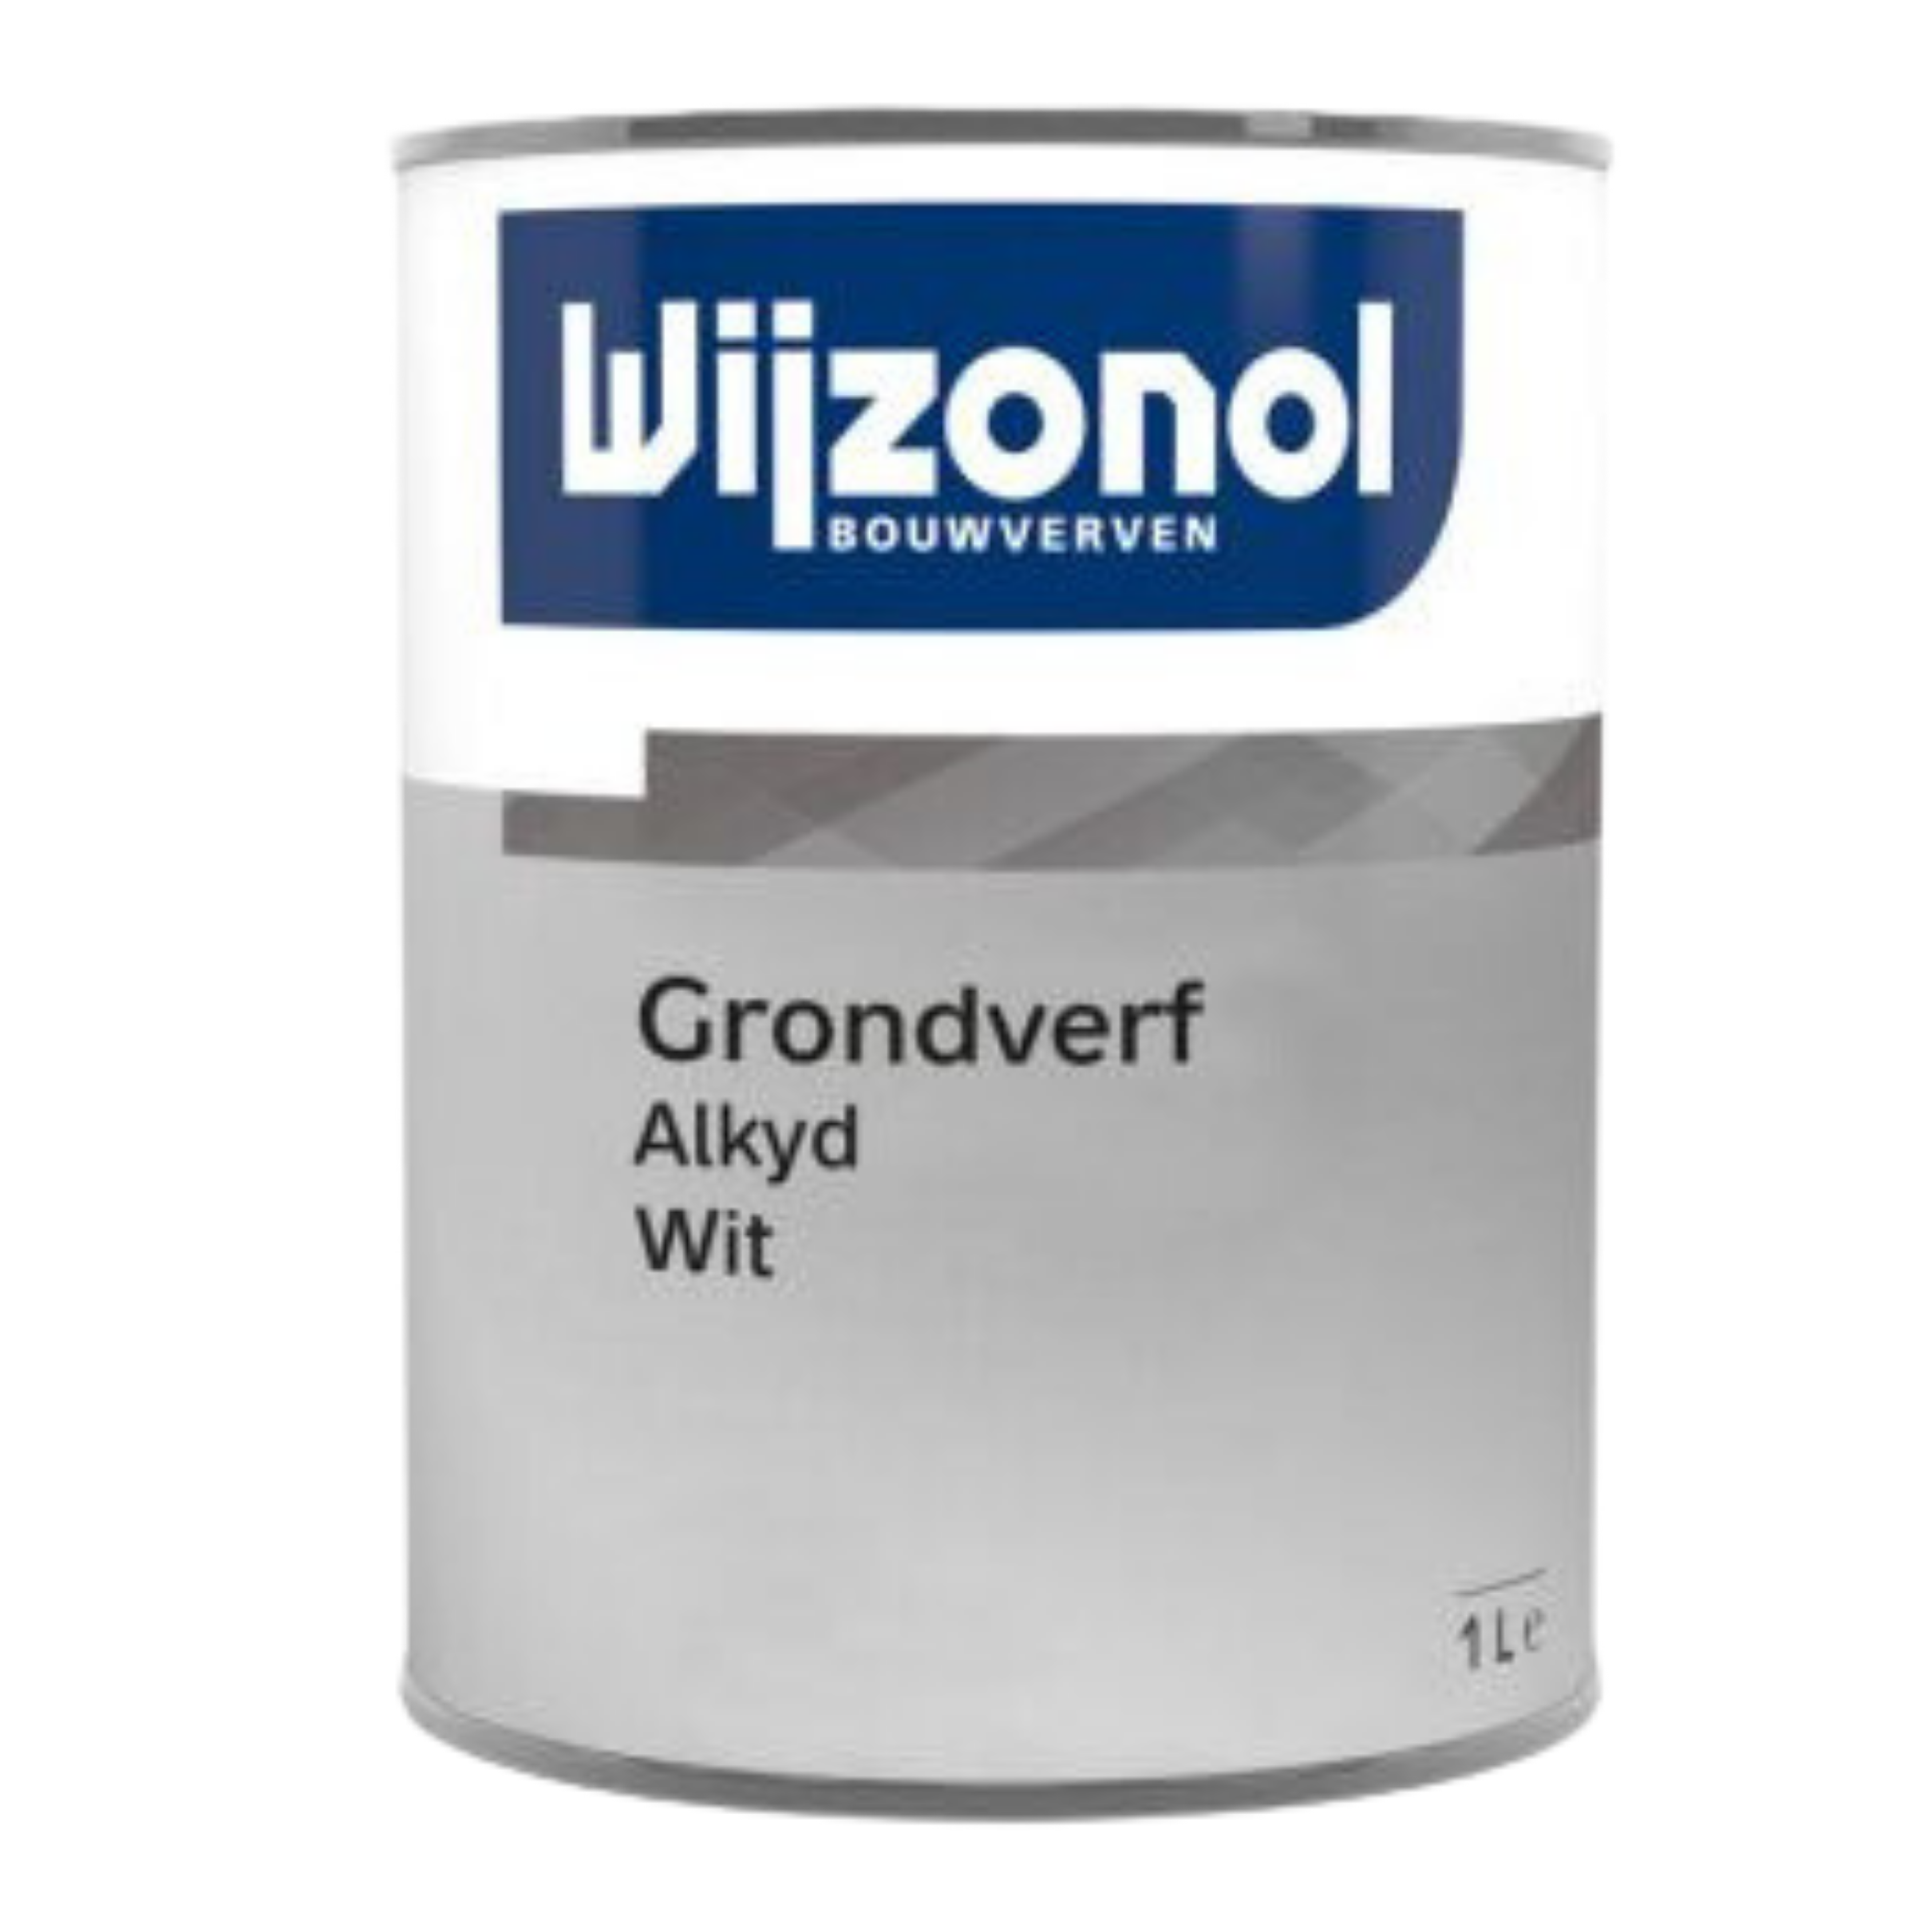 Wijzonol Grondverf Alkyd 2.5 Roomwit